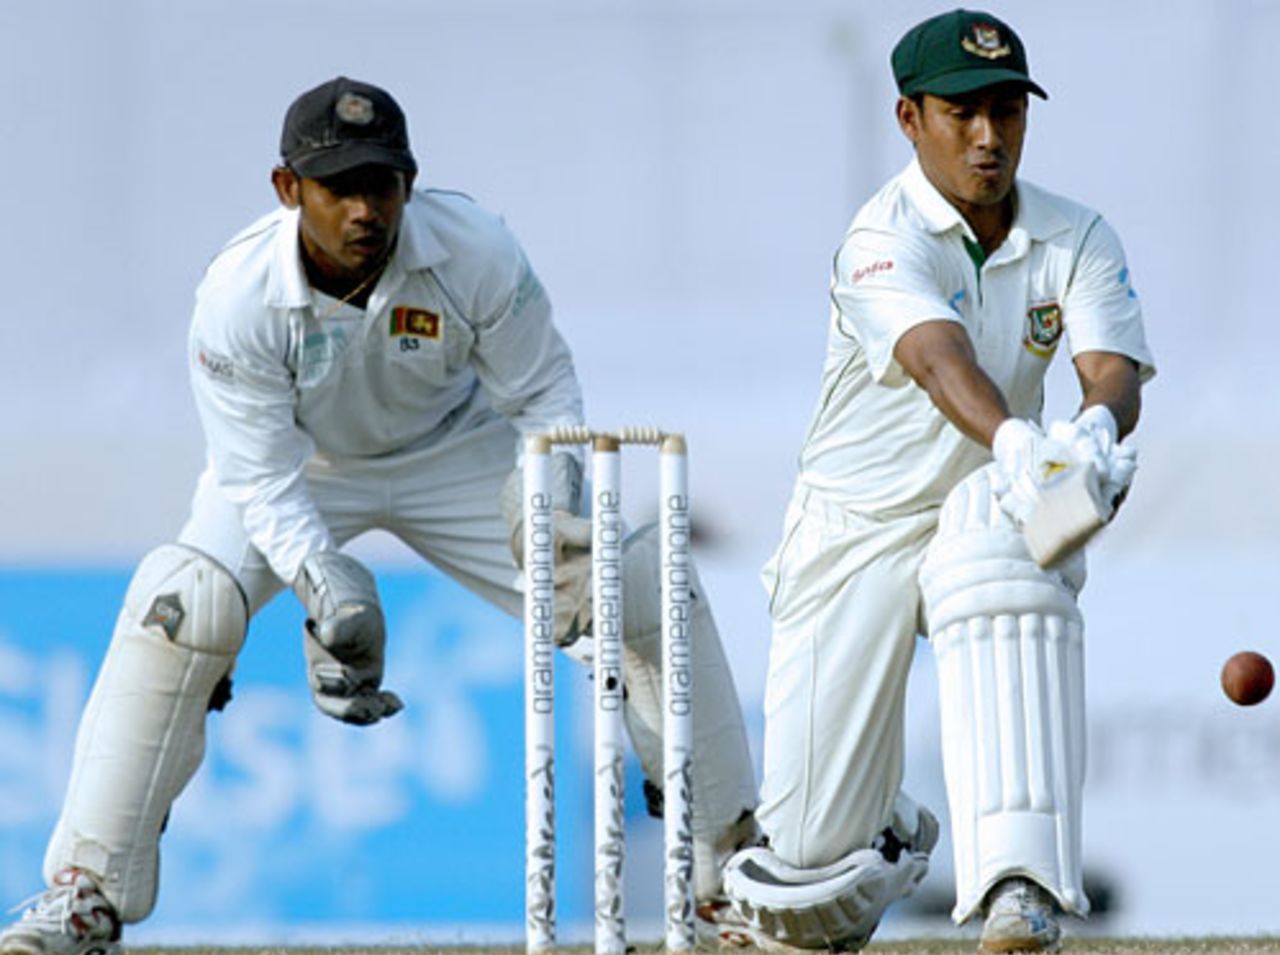 Mohammad Ashraful sweeps, Bangladesh v Sri Lanka, 1st Test, Dhaka, 4th day, December 30, 2008